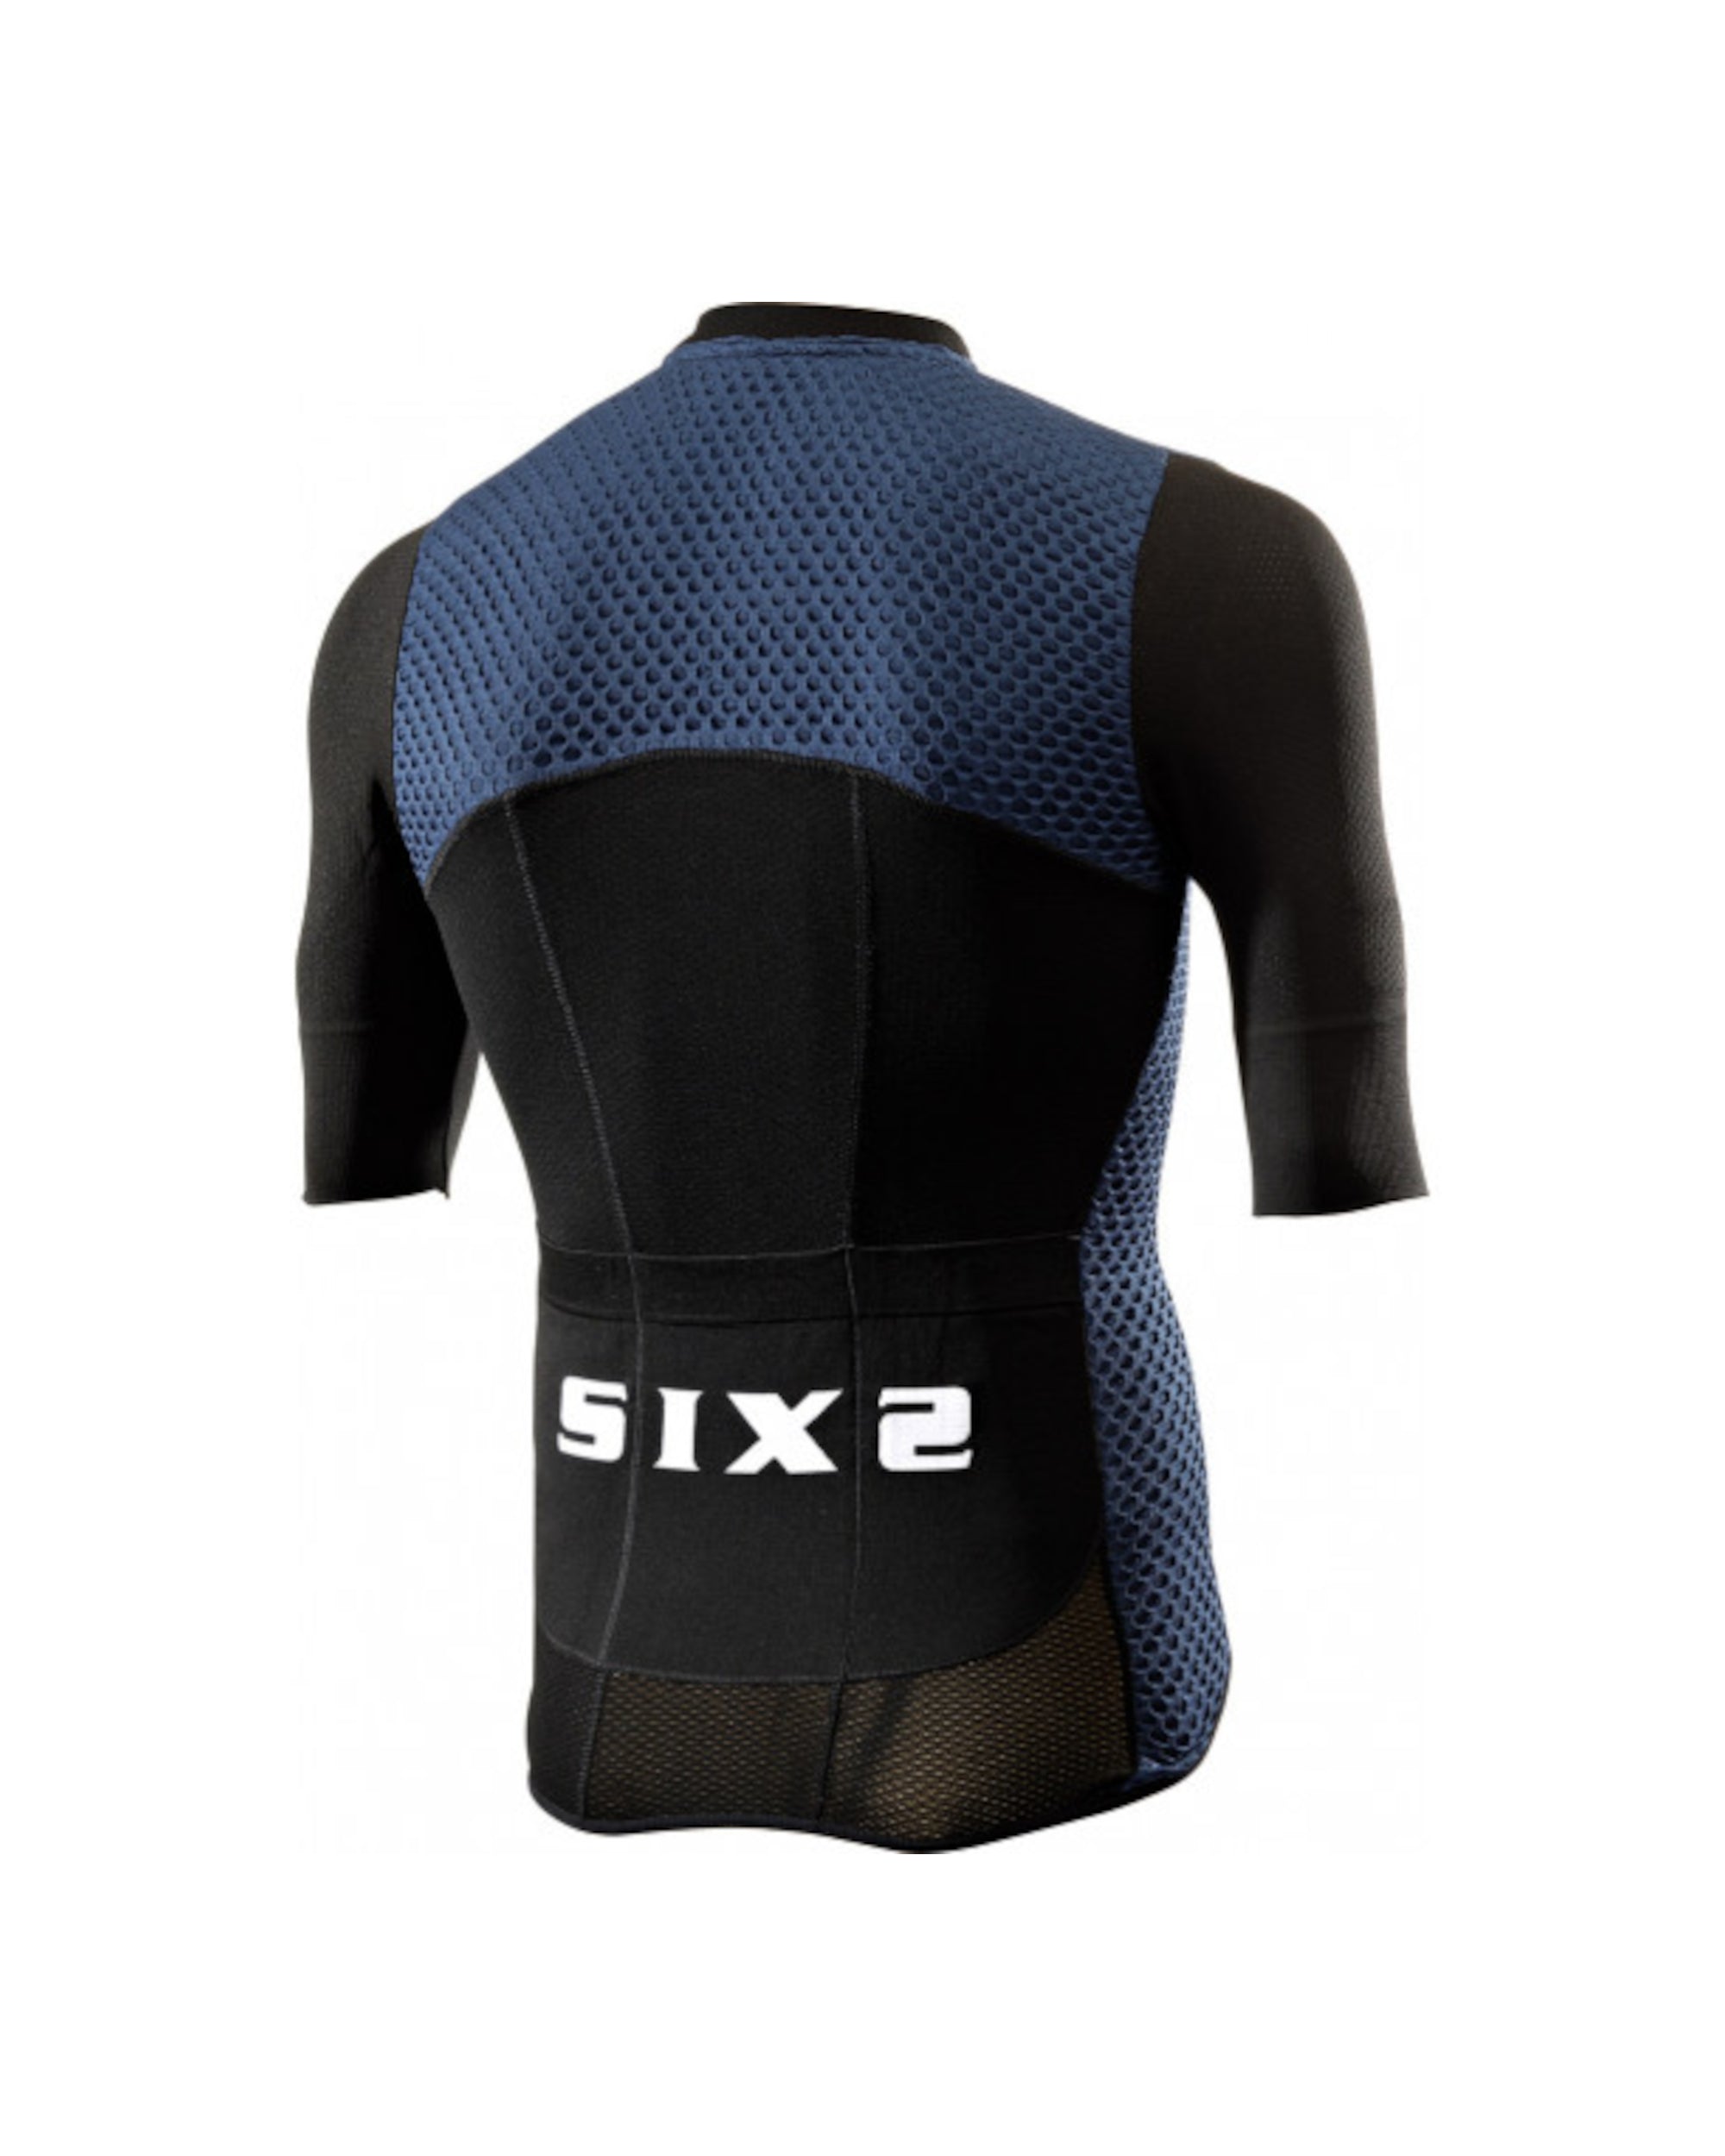 Marškinėliai SIXS Hive / Navy